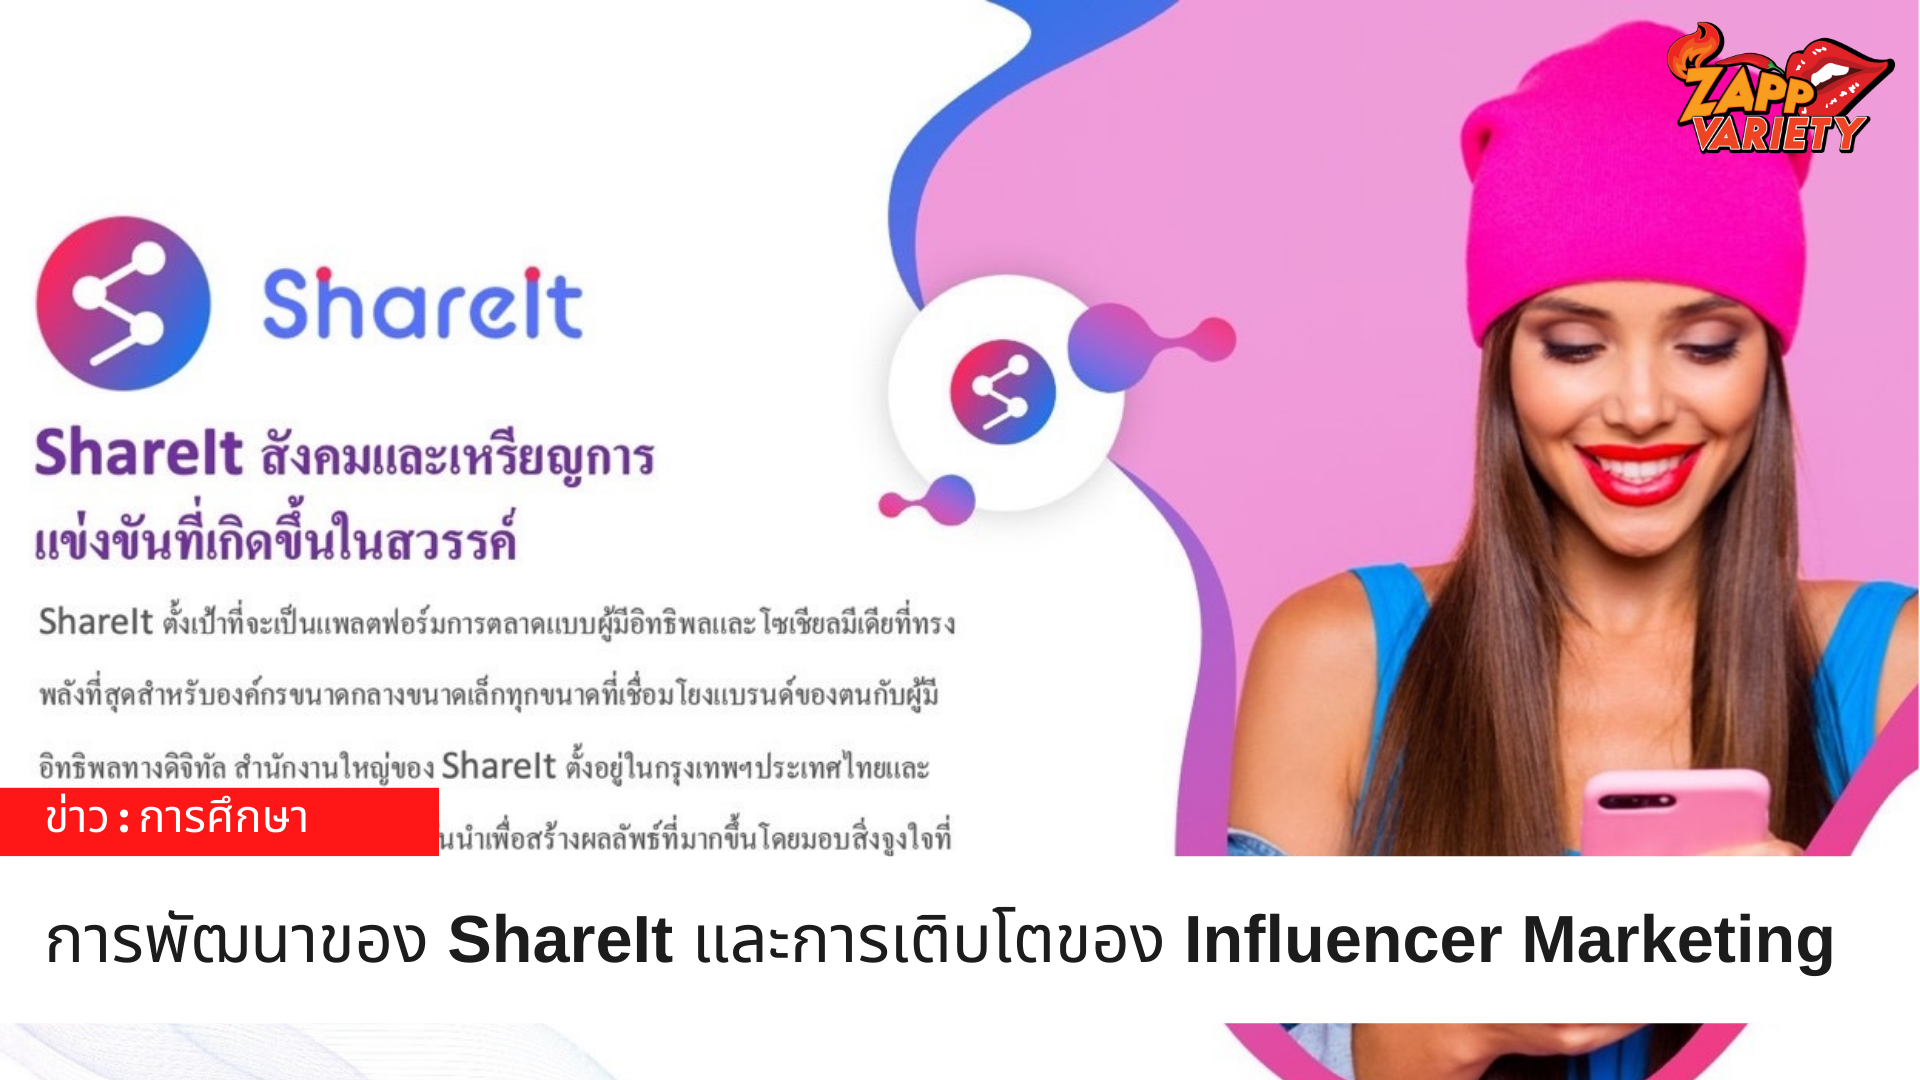 การพัฒนาของ ShareIt และการเติบโตของ Influencer Marketing ในเอเชียตะวันออกเฉียงใต้ 